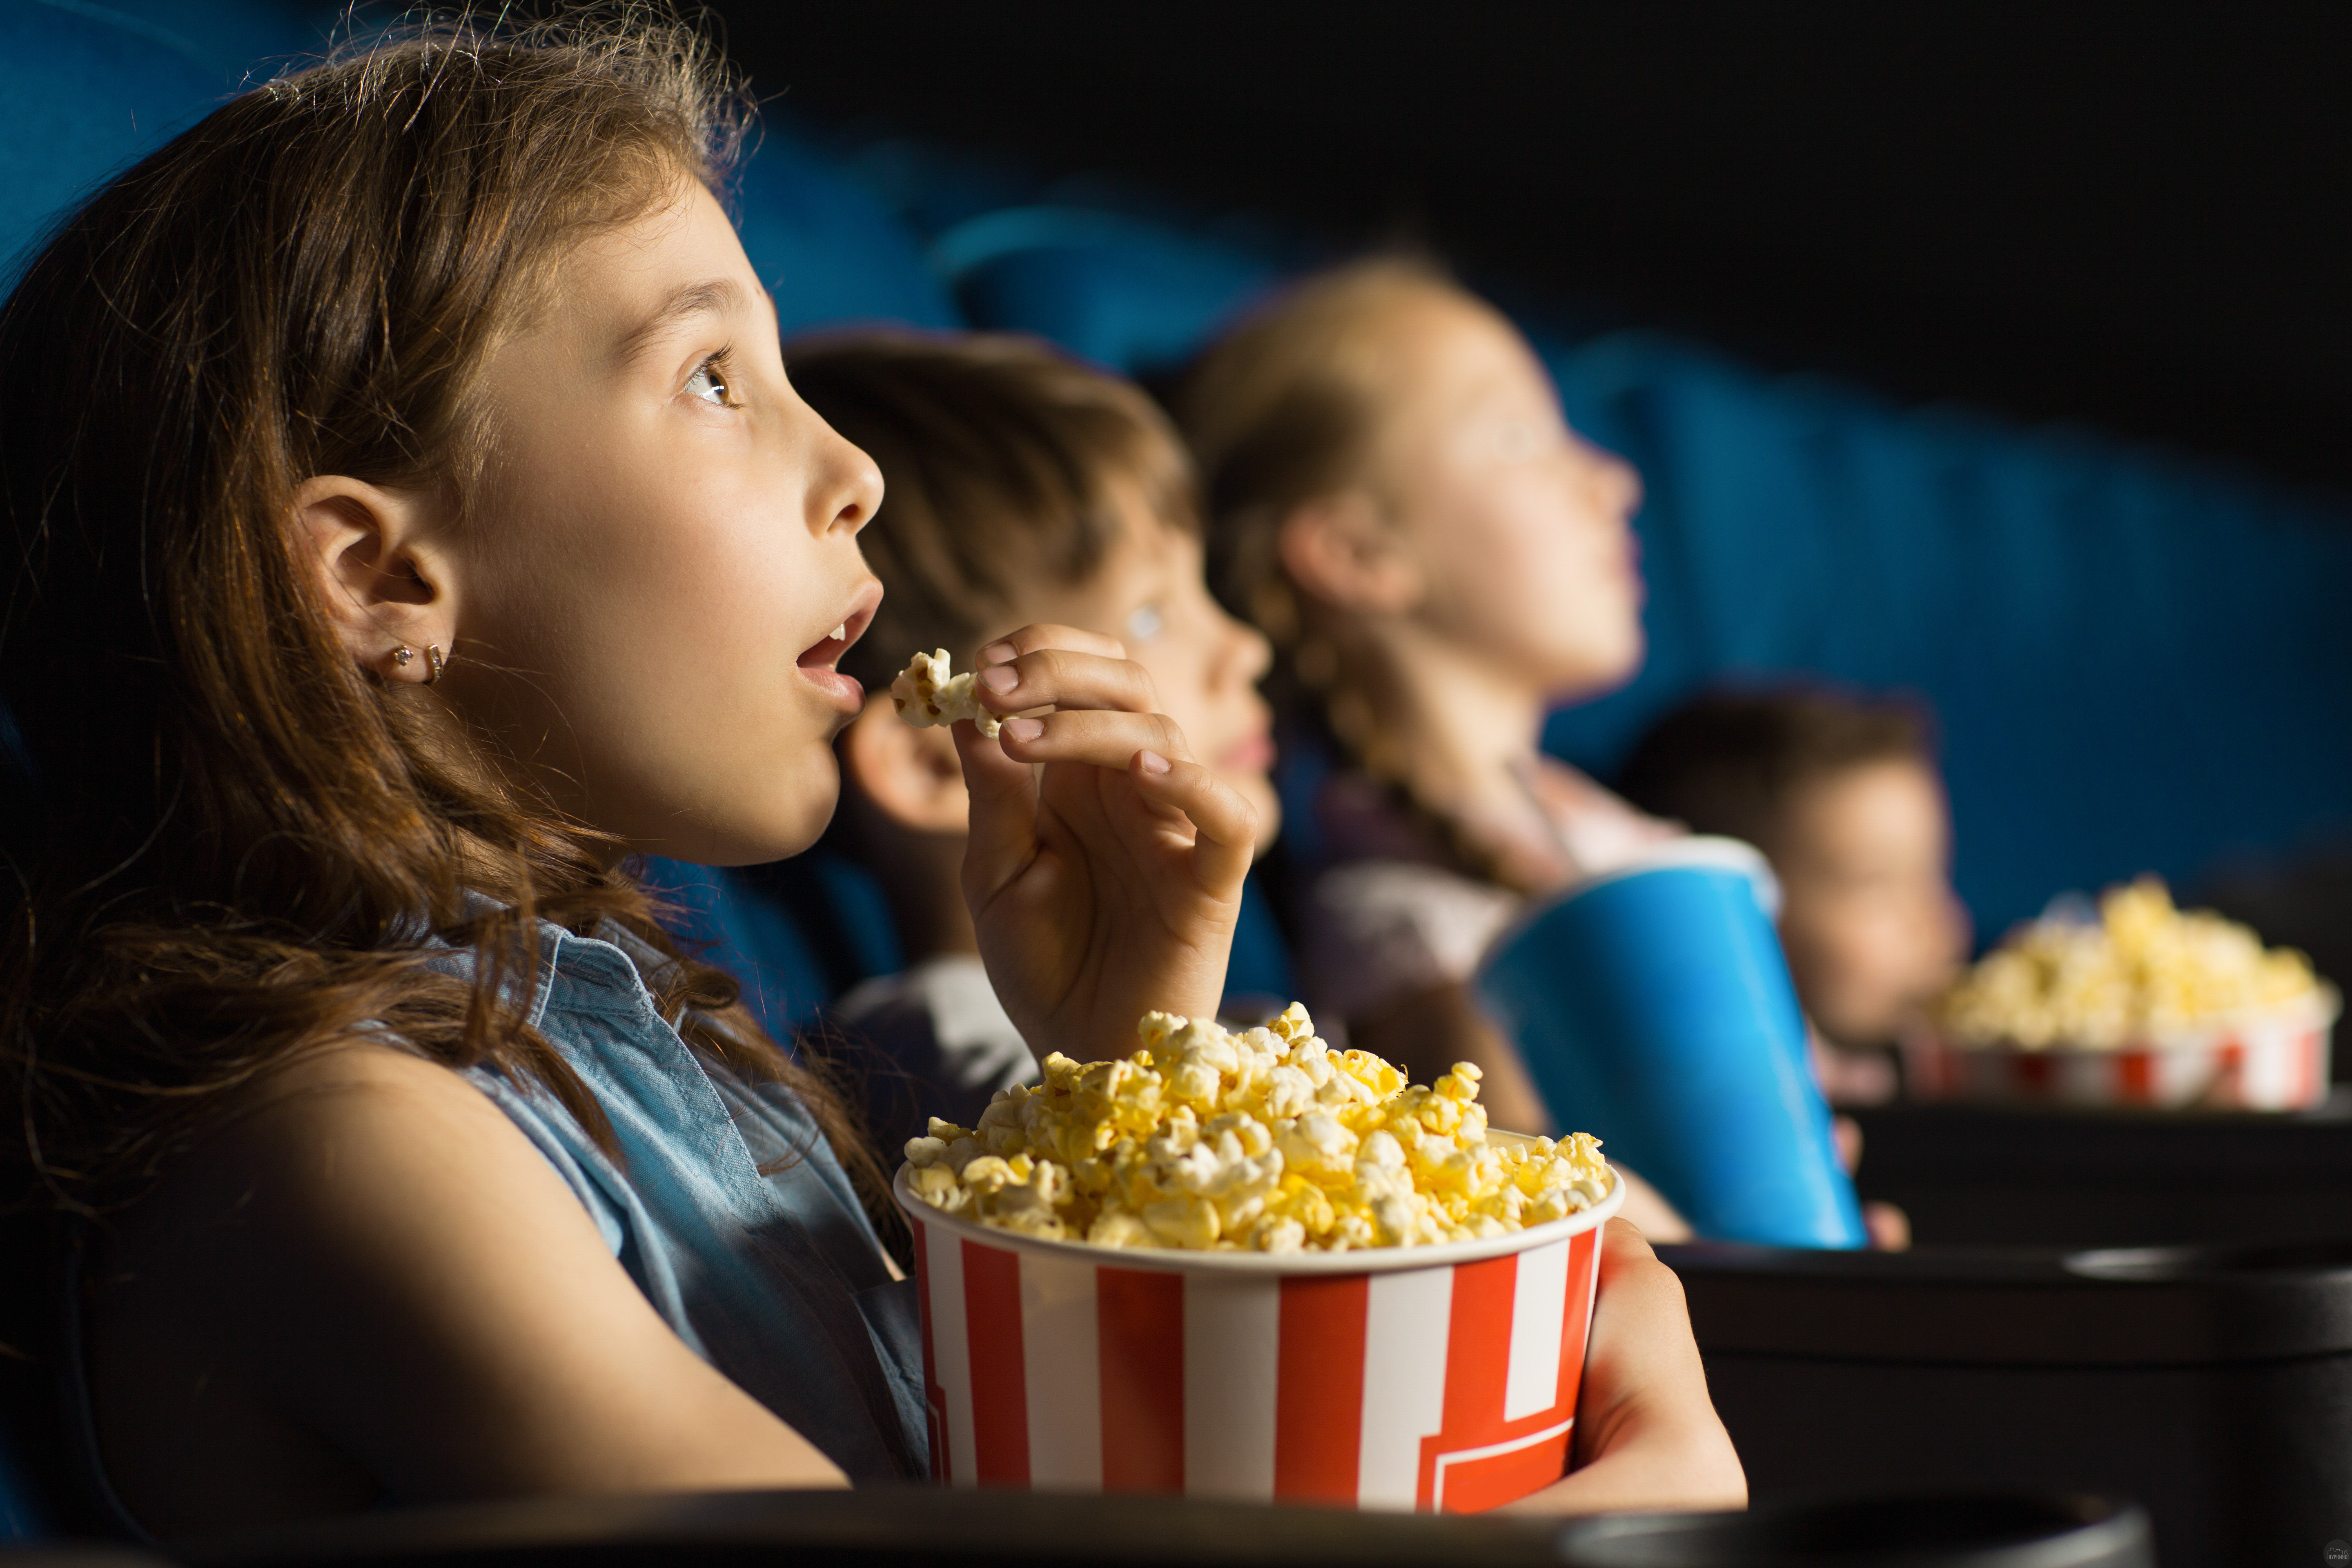 Watch movie s. Дети в кинотеатре. Есть попкорн в кинотеатре.